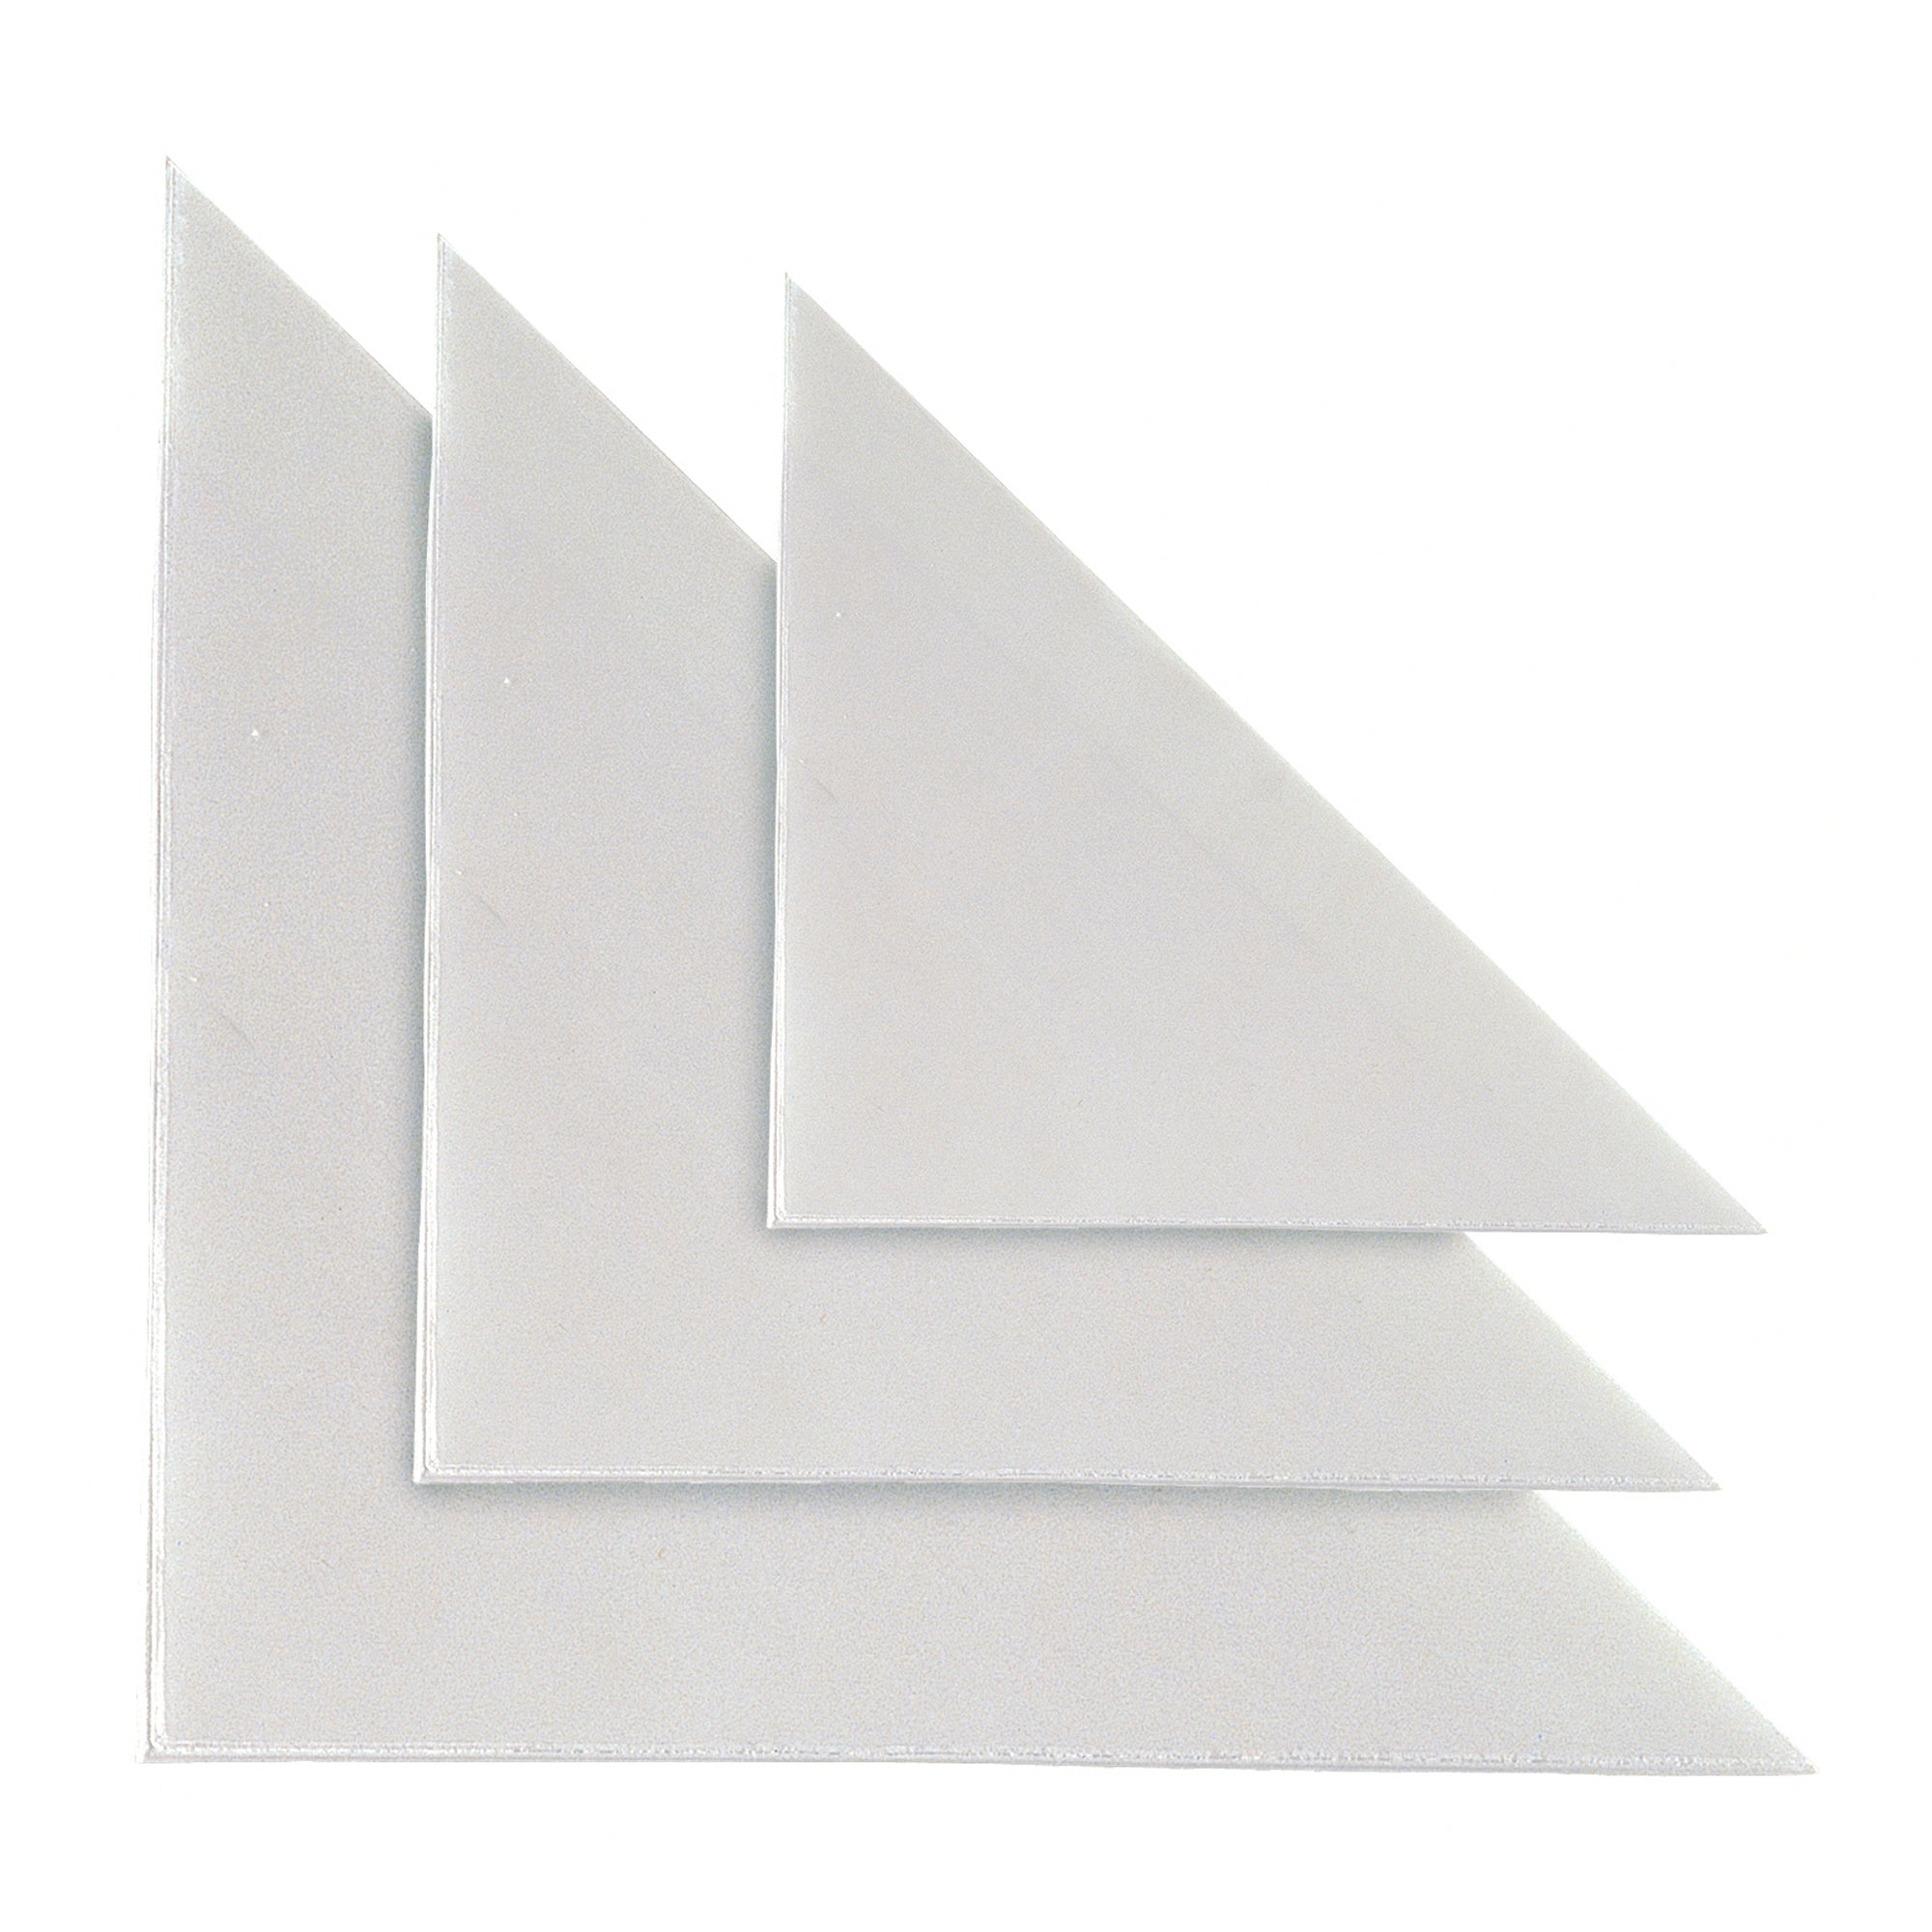 sei-rota-10-buste-adesive-tasca-tr-17-triangolare-17x17cm